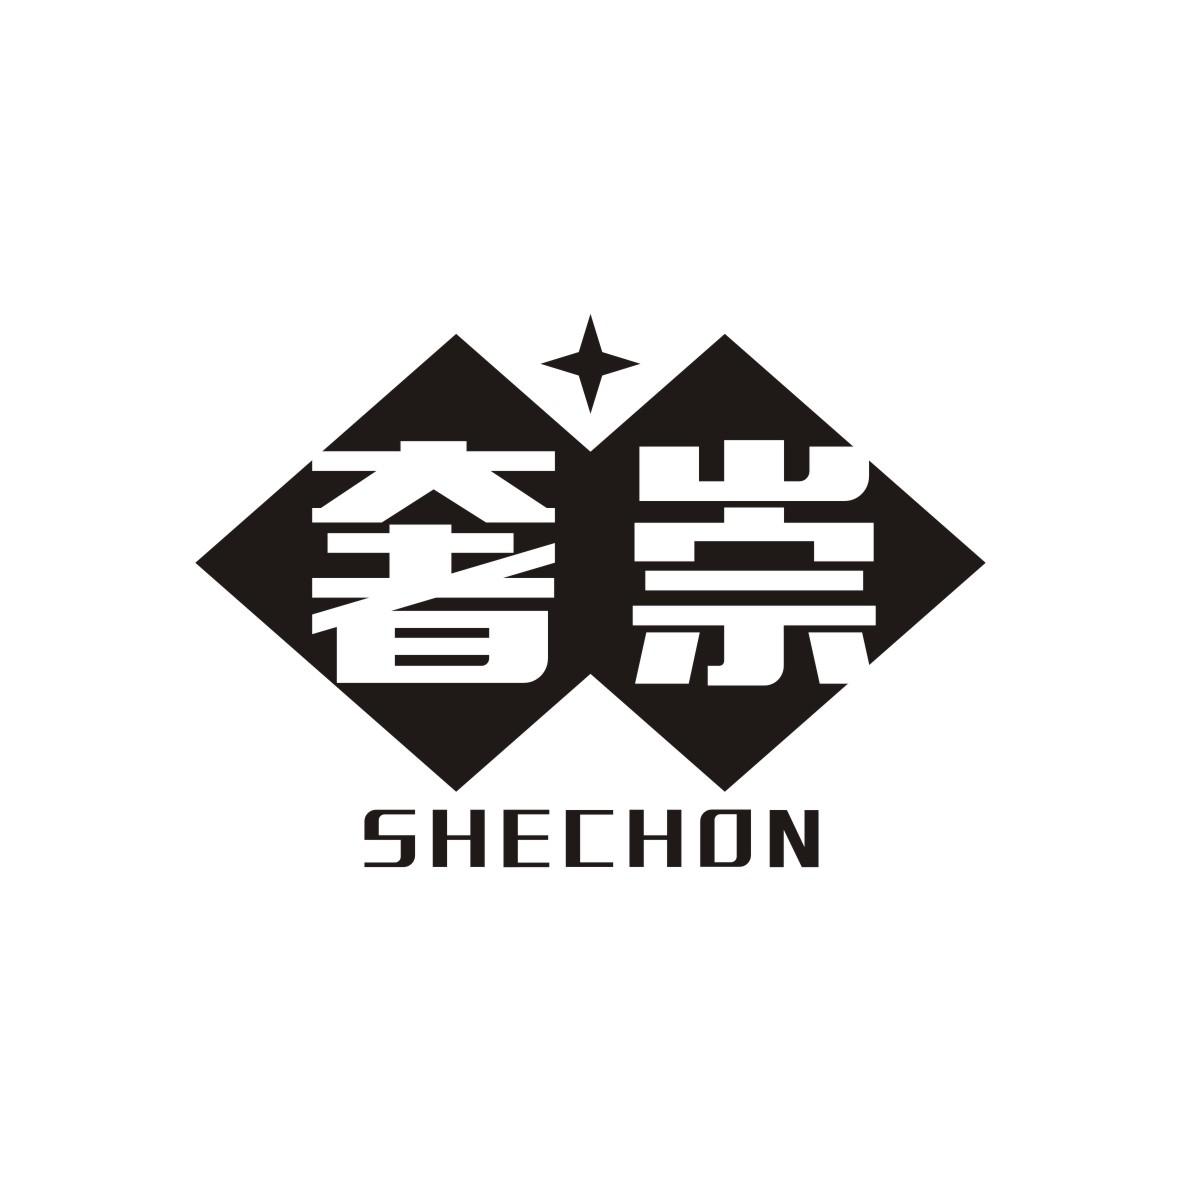 奢崇 SHECHON商标图片